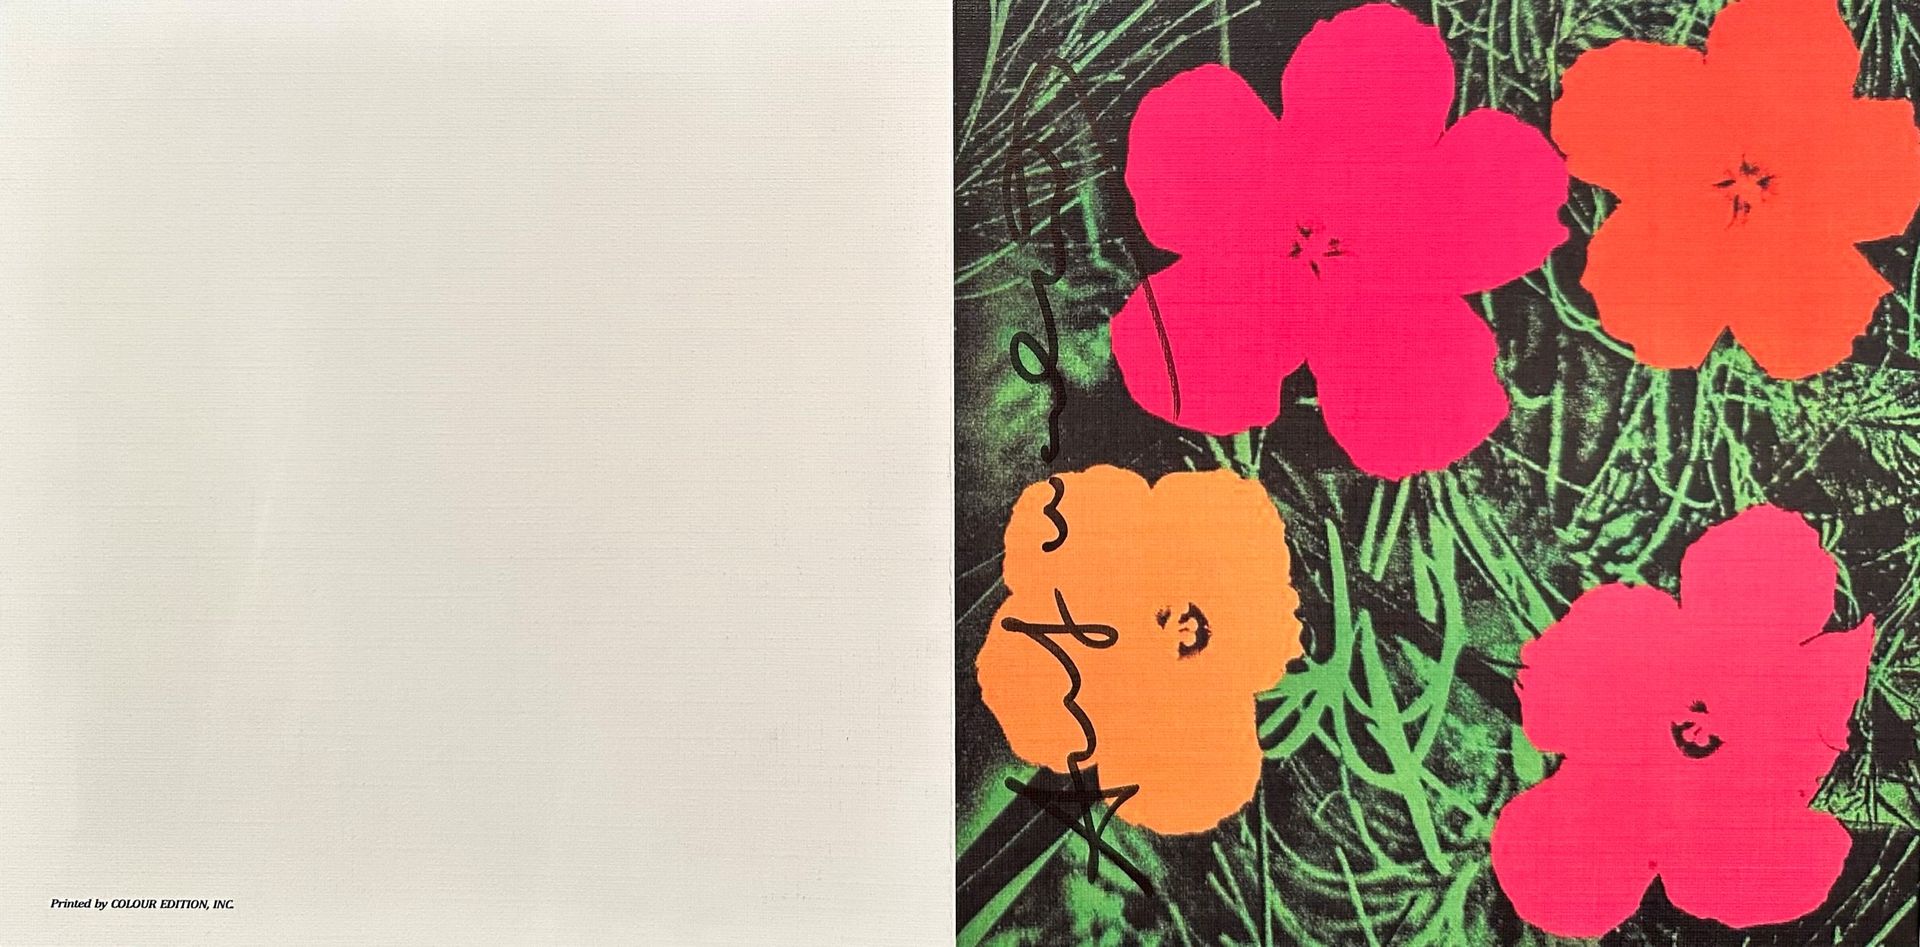 Null 安迪-沃霍尔（后），《花》，1981年在卡斯泰利图形画廊举办的 "印刷品回顾展 "的邀请卡。印在有纹理的纸上，有黑色马克笔签名和AW印章，展开后为18&hellip;